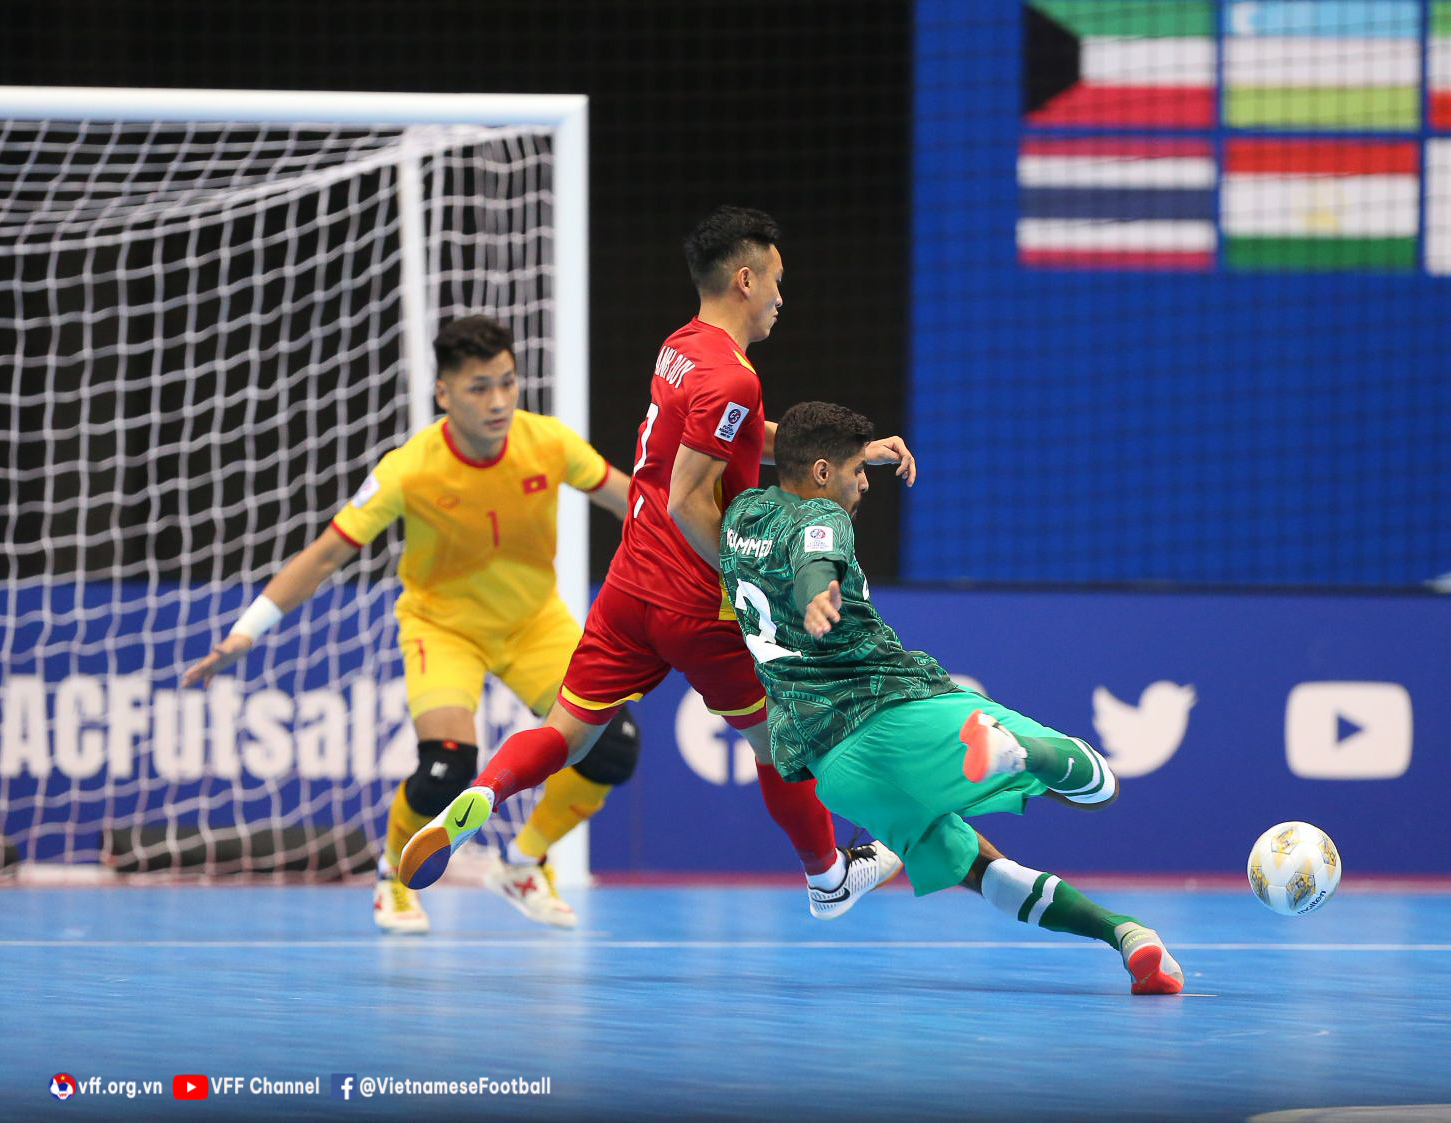 Thắng Ả-rập Xê-út 3-1, ĐT futsal Việt Nam vươn lên đầu bảng - Ảnh 2.